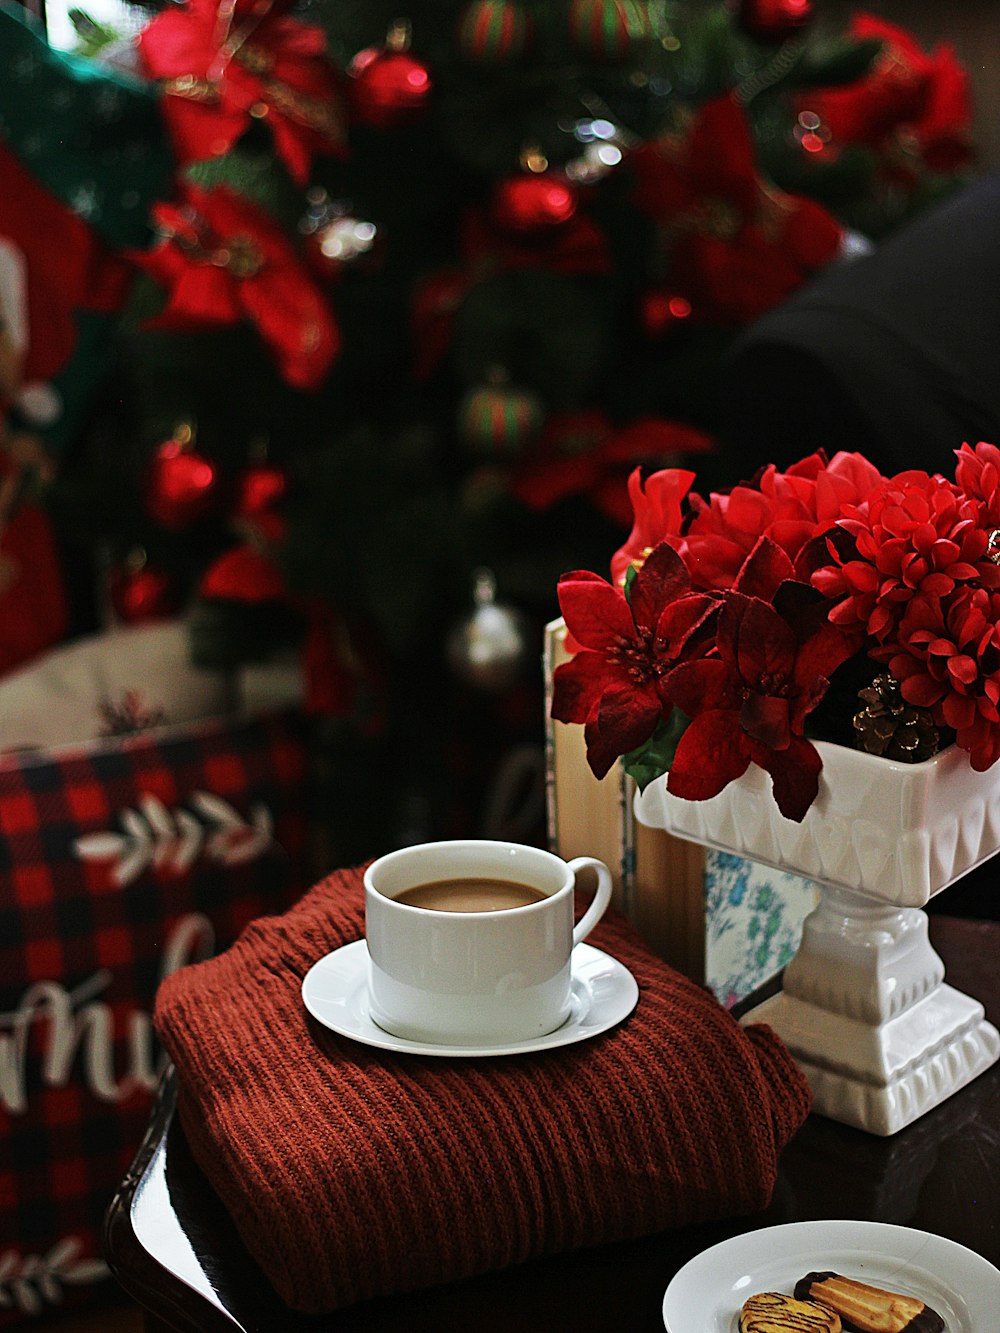 rosas rojas sobre taza de té de cerámica blanca sobre mantel a cuadros rojos y blancos